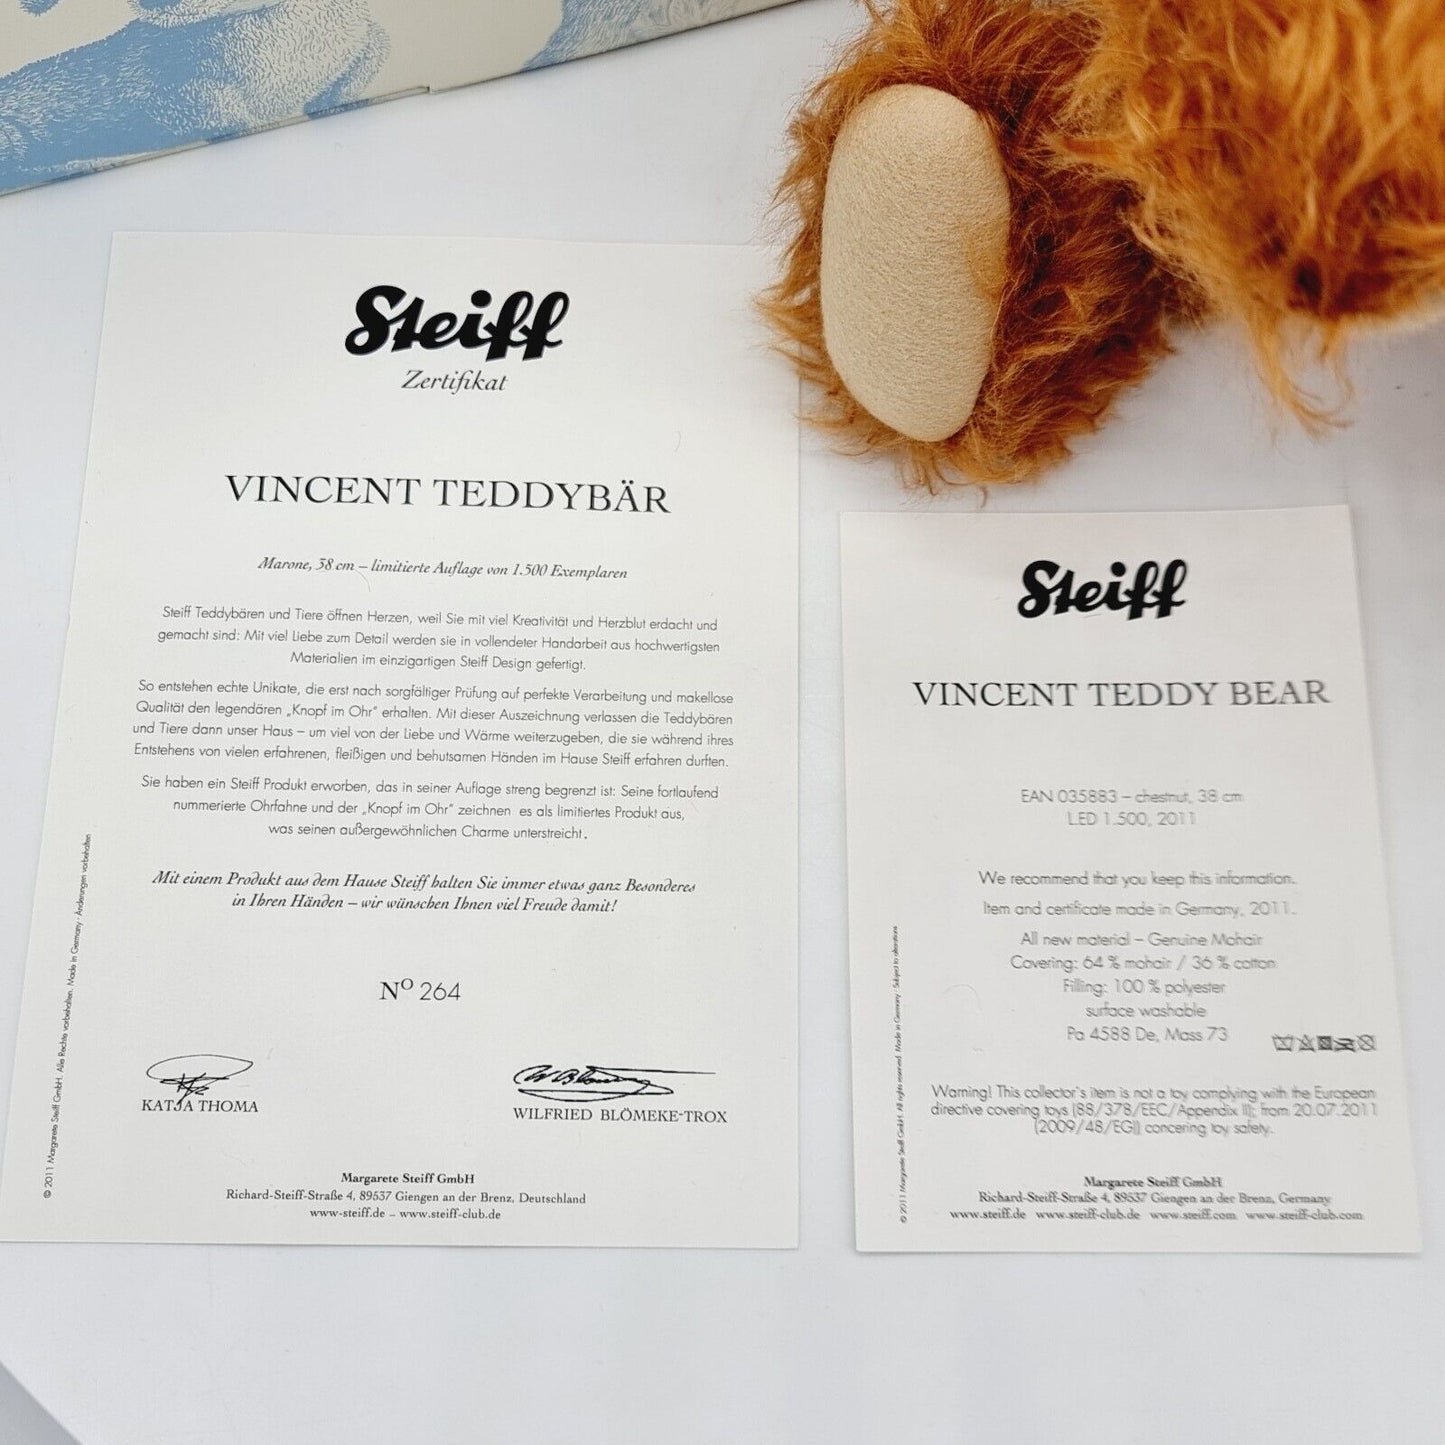 Steiff 035883 Vincent Teddybär 38 cm mit Brummstimme limitierte Auflage von 1500